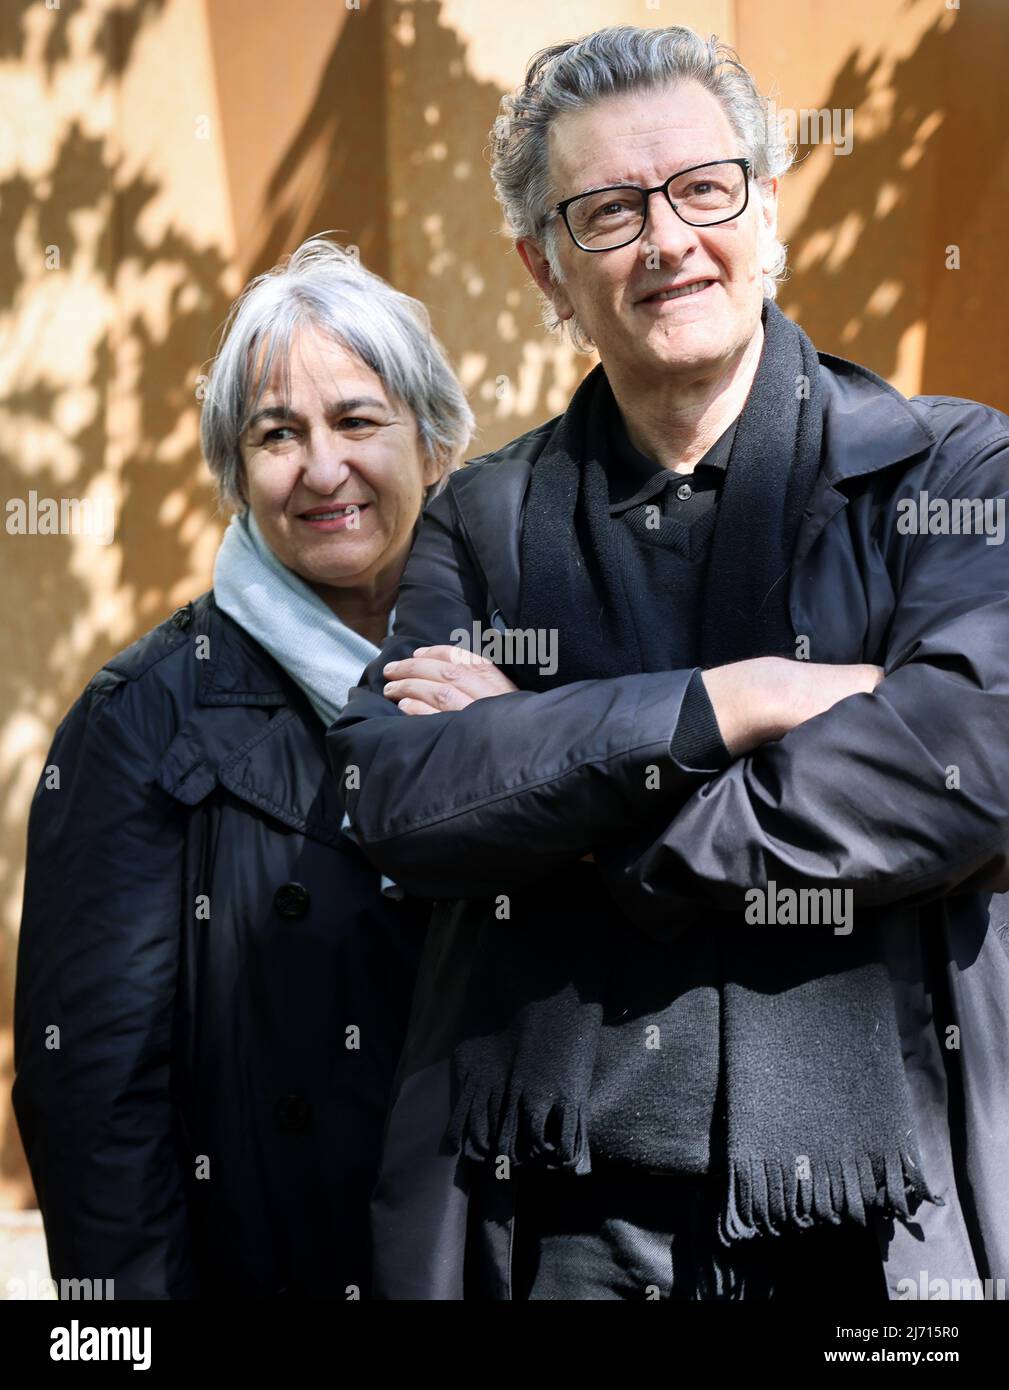 05 mai 2022, Hambourg : Anne Lacaton et Jean-Philippe vassal, architectes,  souriez lors d'une visite de l'usine culturelle de Kampnagel. La société  d'architecture française Lacaton&vassal, qui a reçu le prix Pritzker 2021,